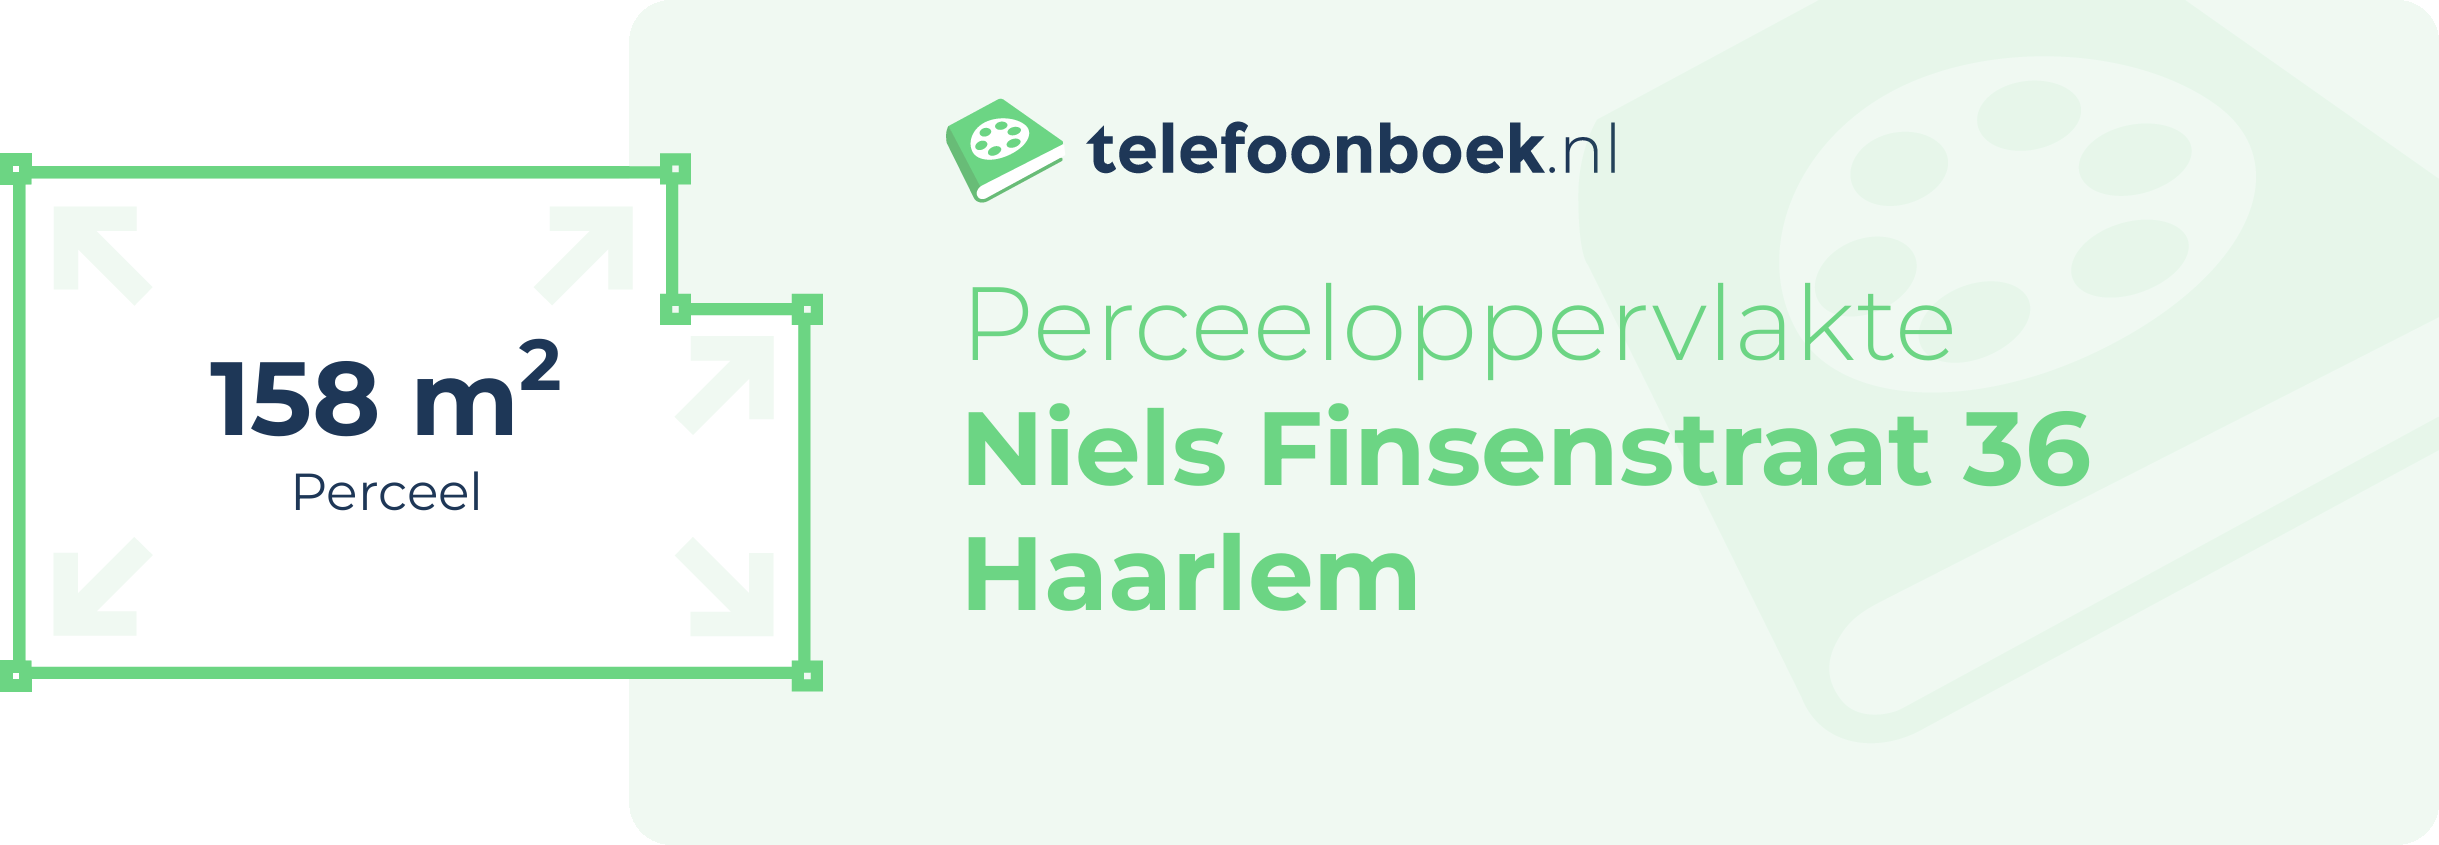 Perceeloppervlakte Niels Finsenstraat 36 Haarlem